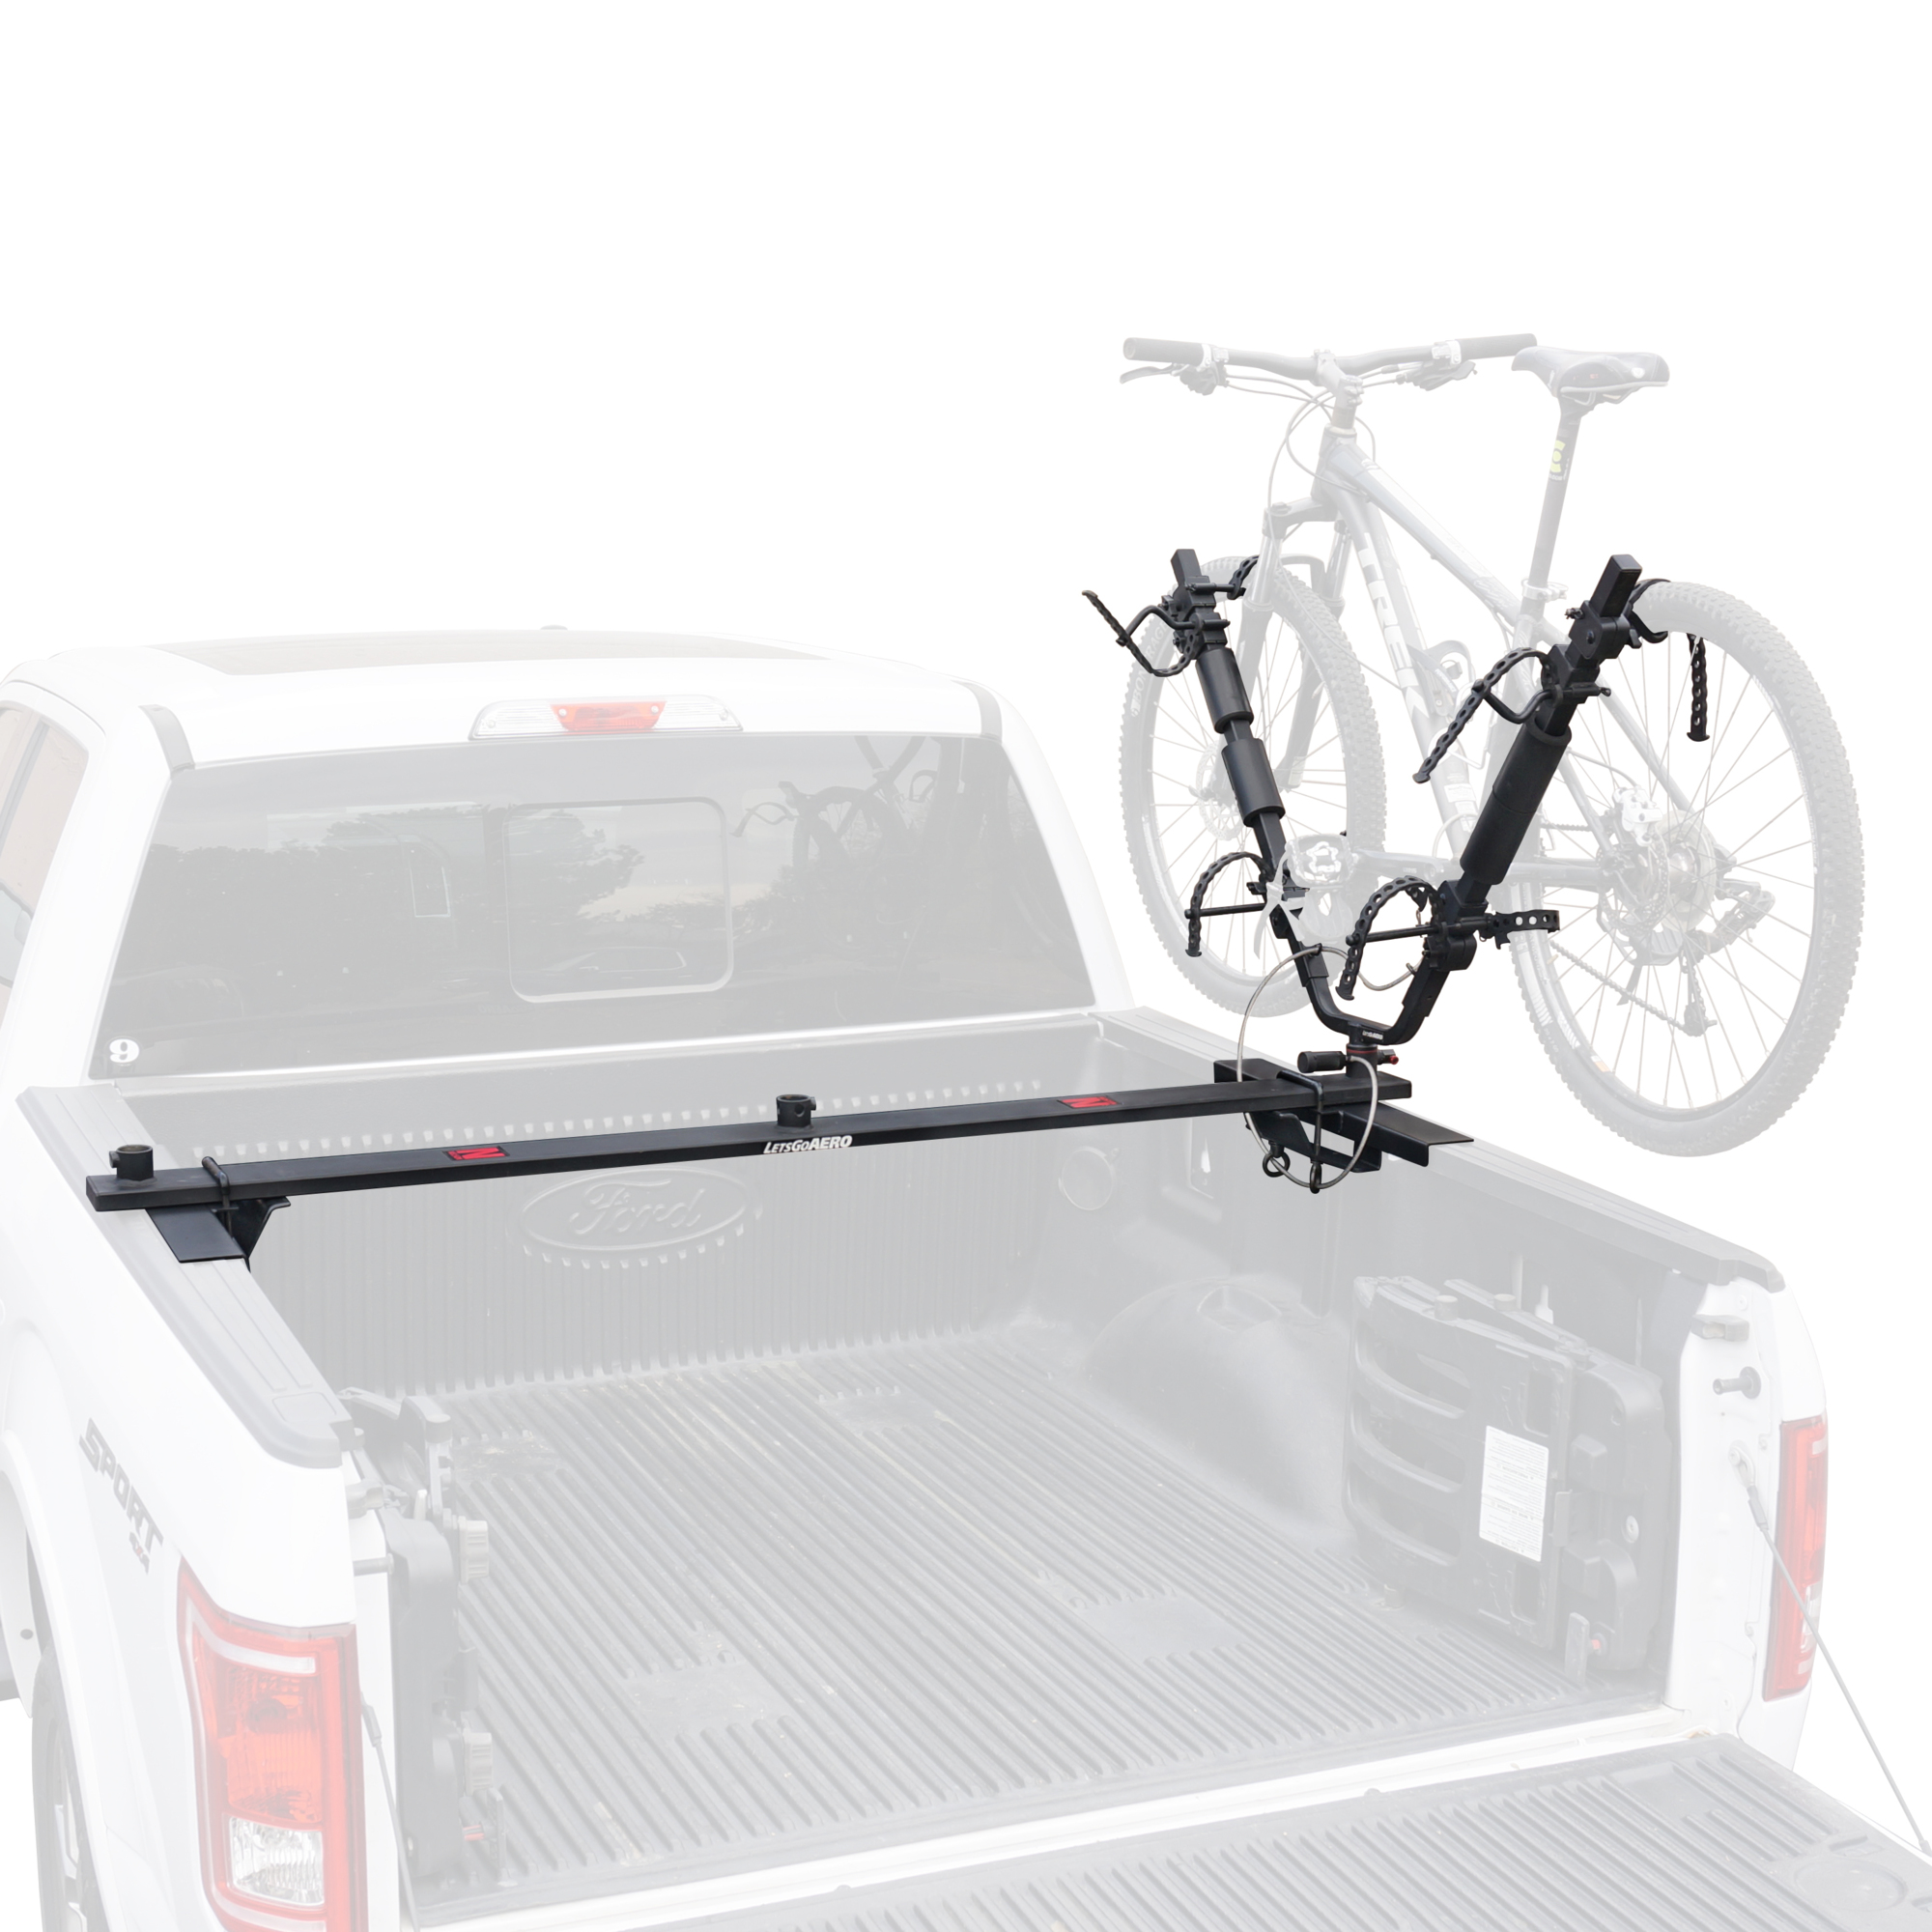 Let's Go Aero, Full Nelson 2-Bike Truck Bed Mount Carrier, Bike Capacity 2, Color Black, Material Steel, Model B01427